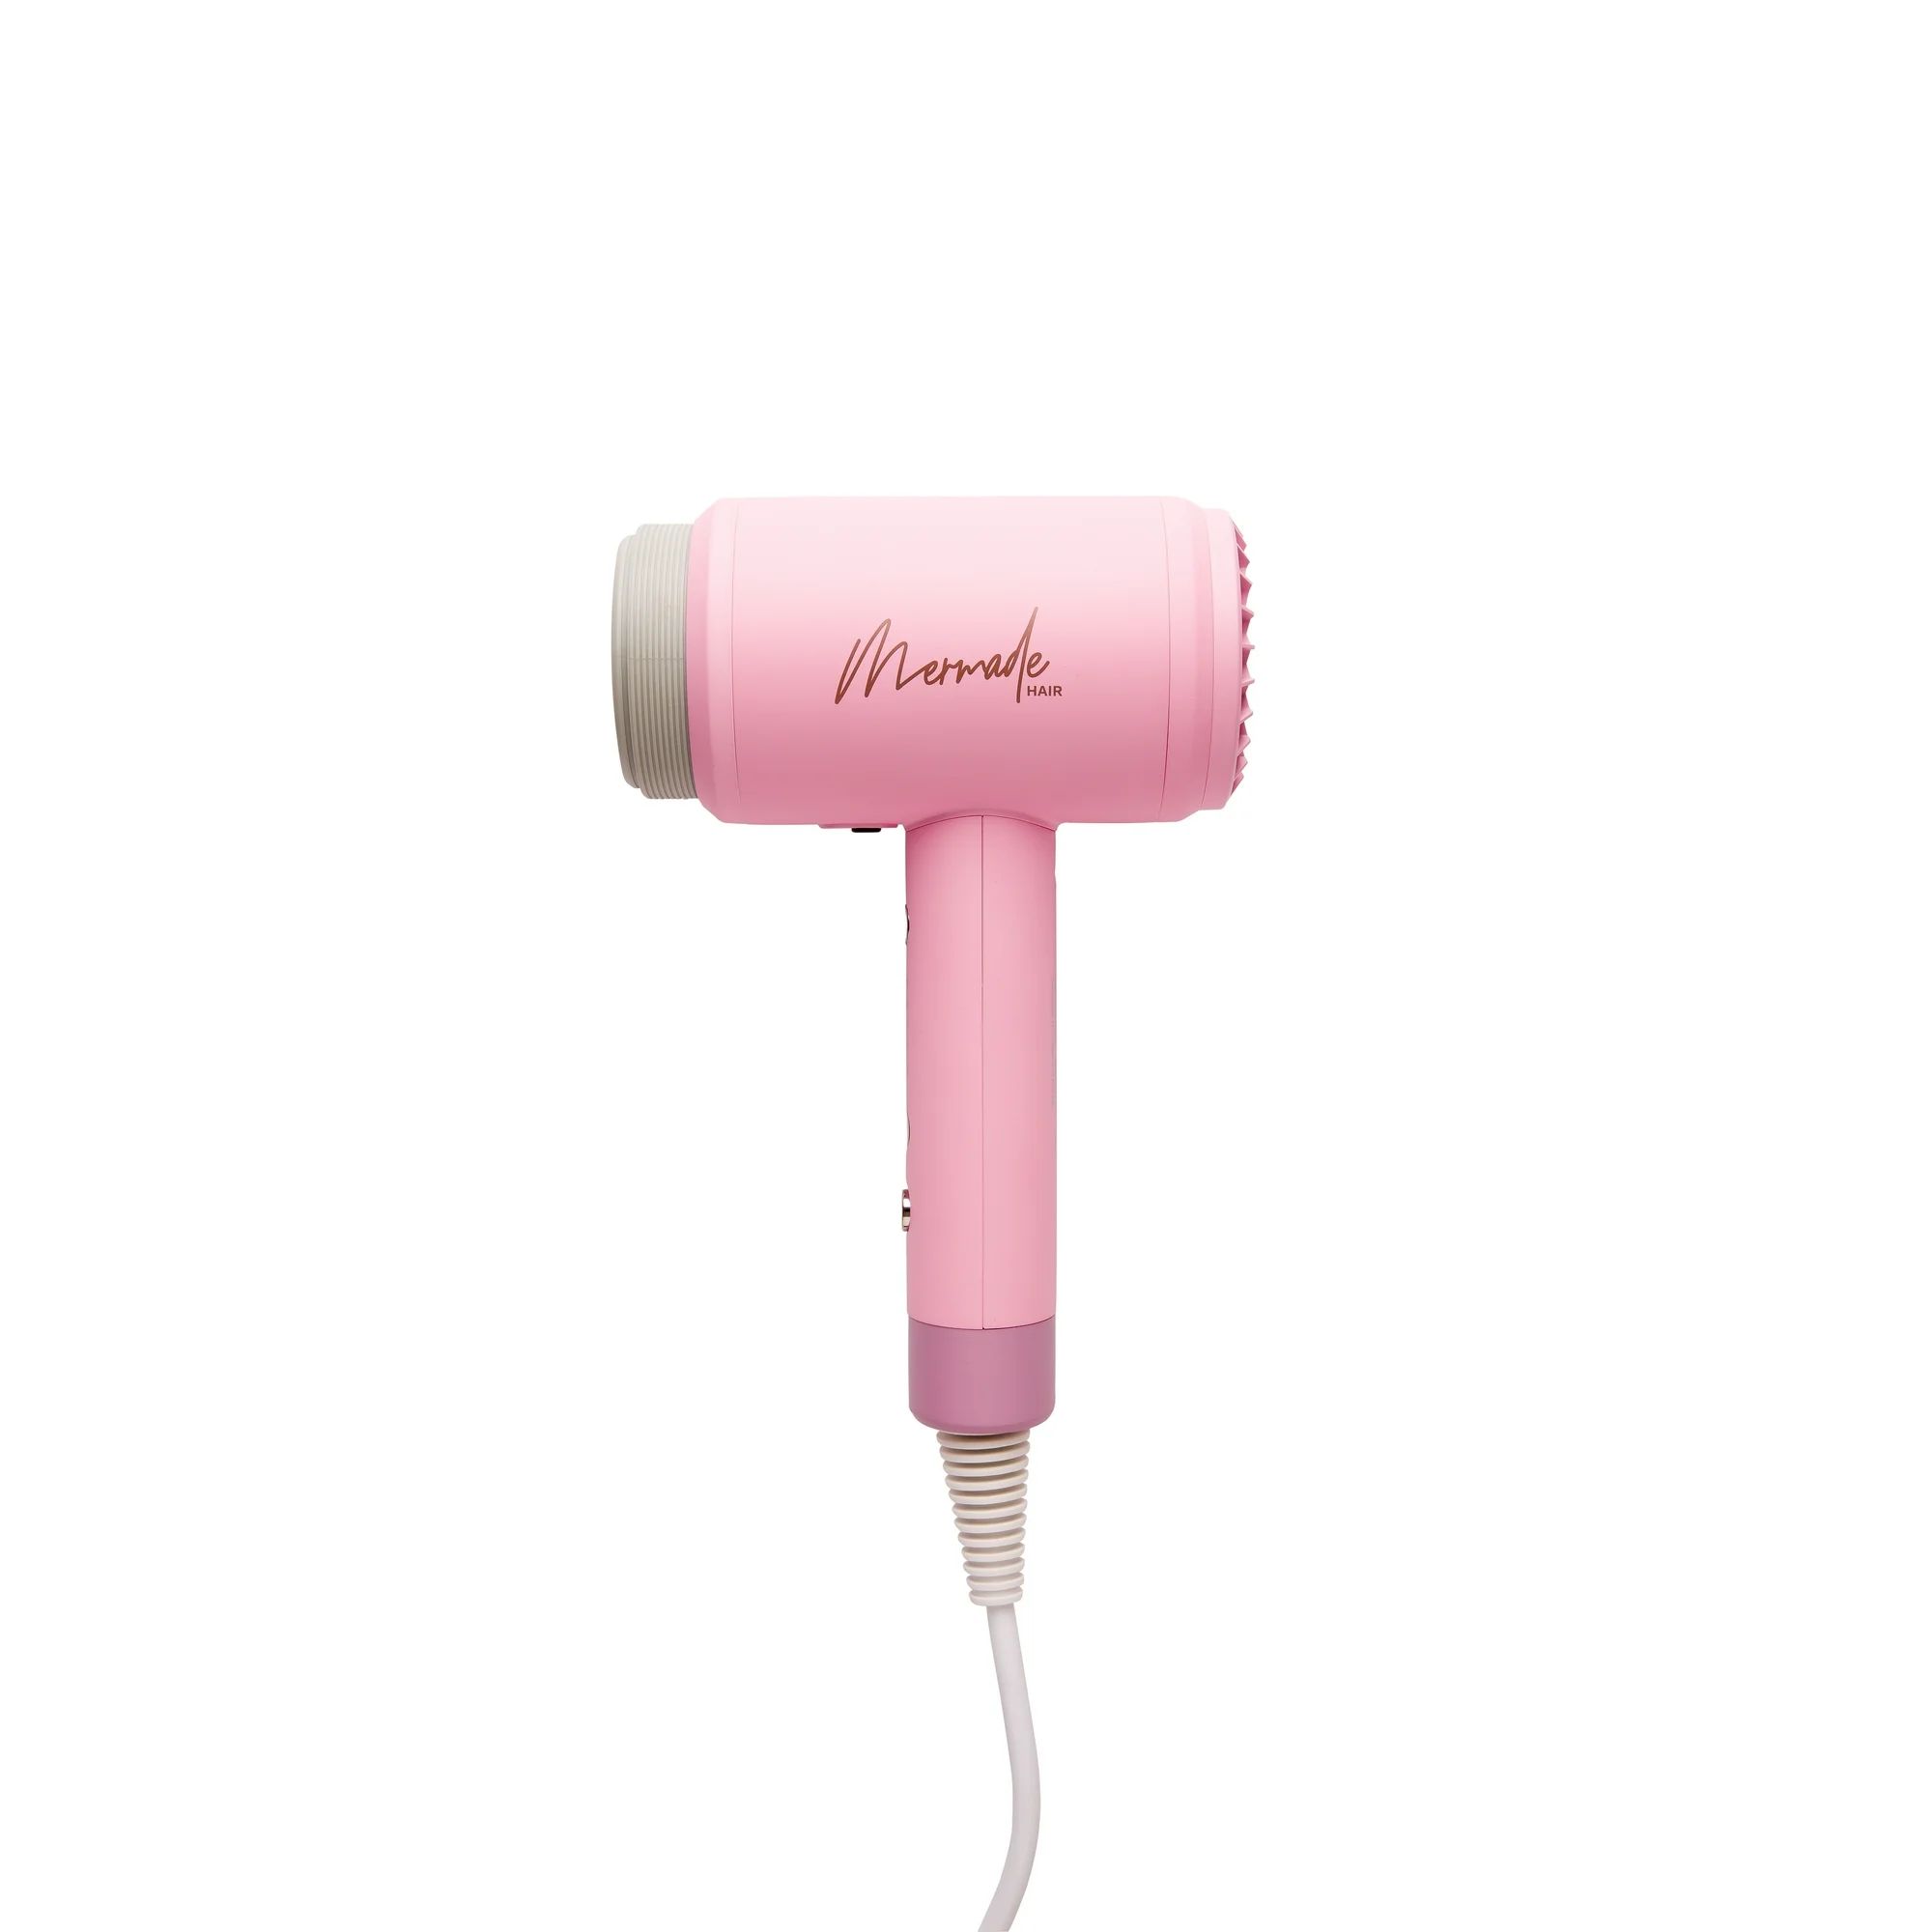 Mermade Hair Dryer - Pink | Walmart (US)